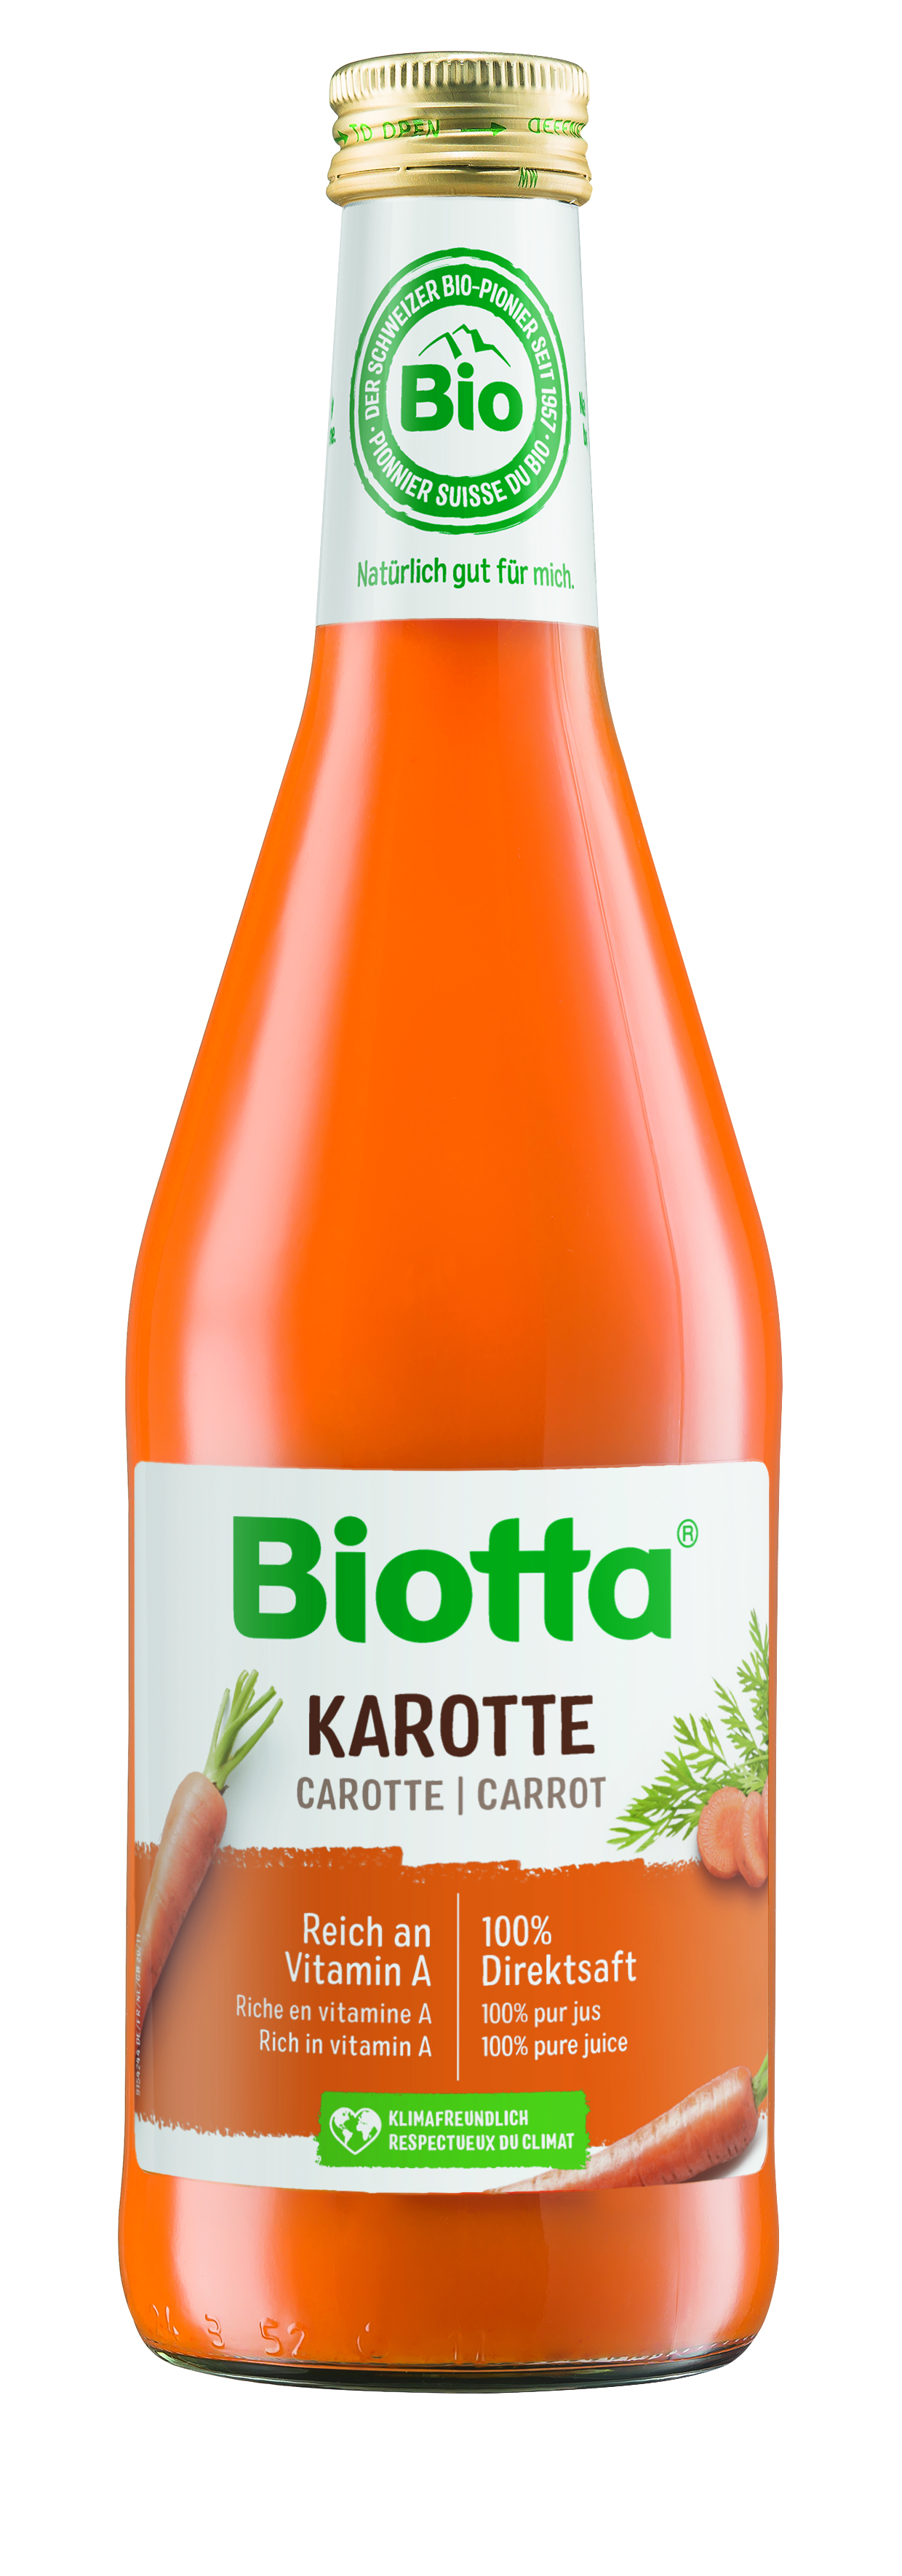 Biotta mrkvová šťava 3 kartóny - cena za 1 ks 4,111€ s DPH